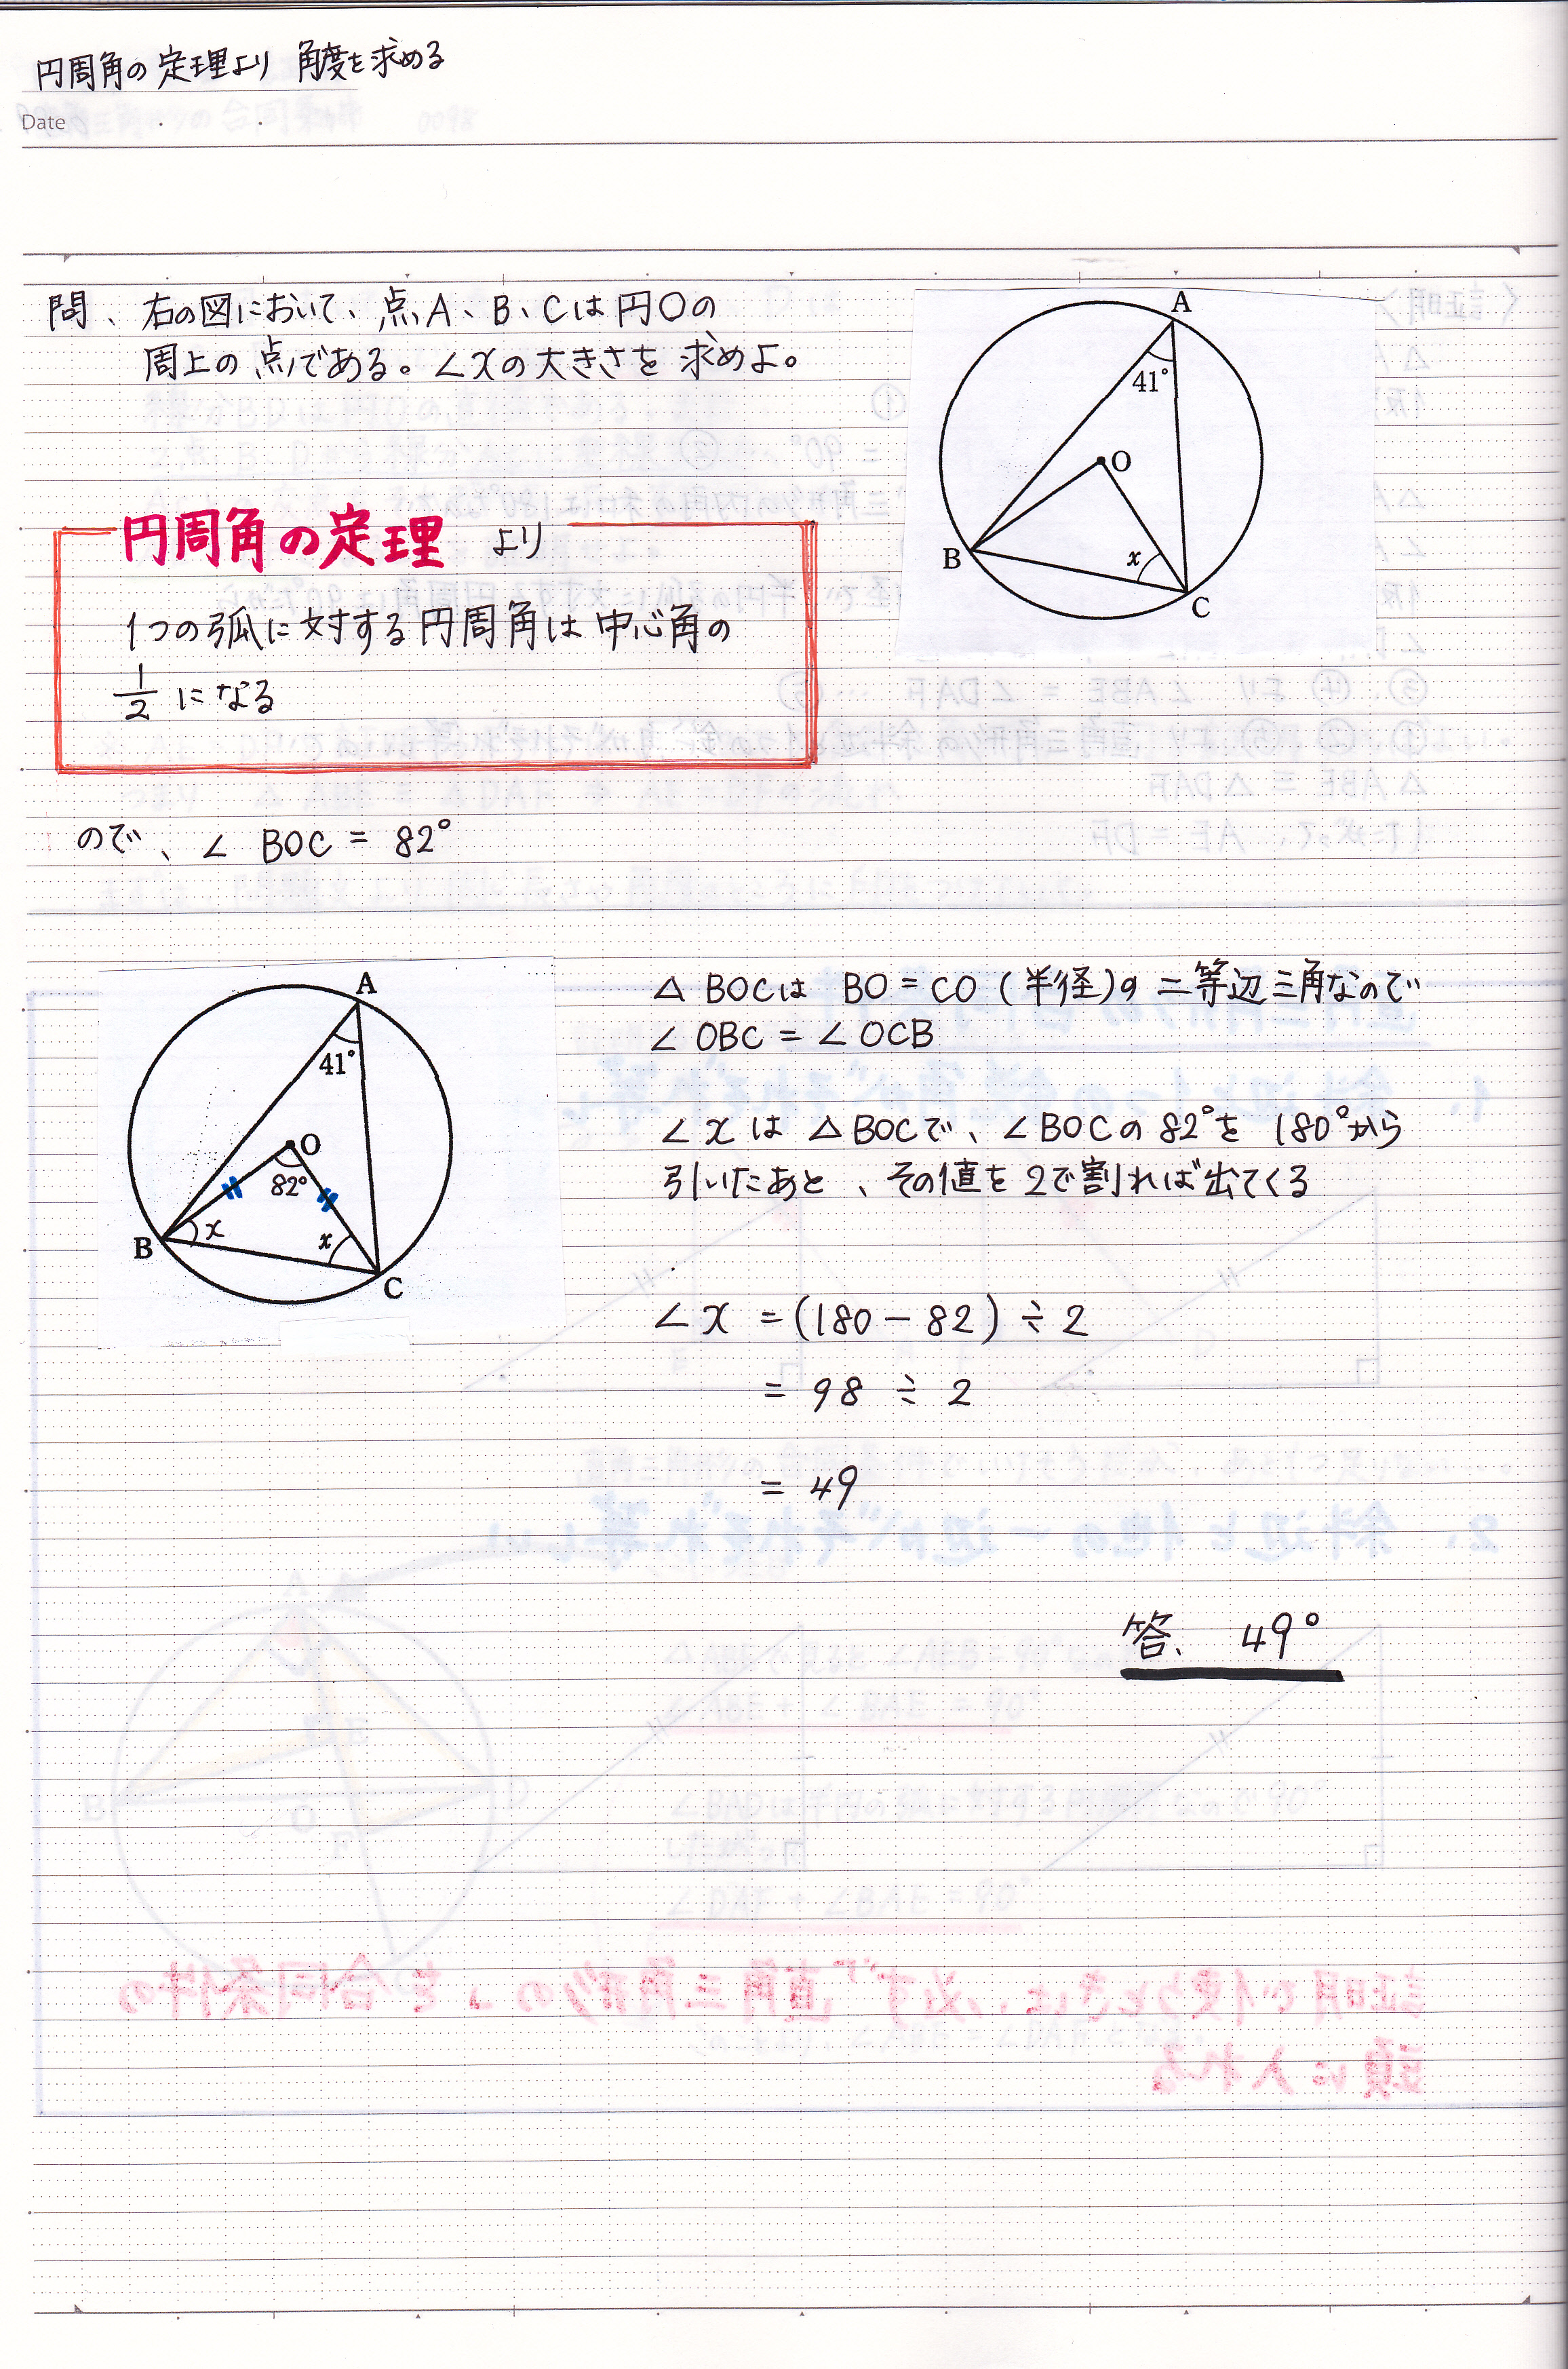 円周角の定理を使って角度を求める問題の解き方 現役塾講師の